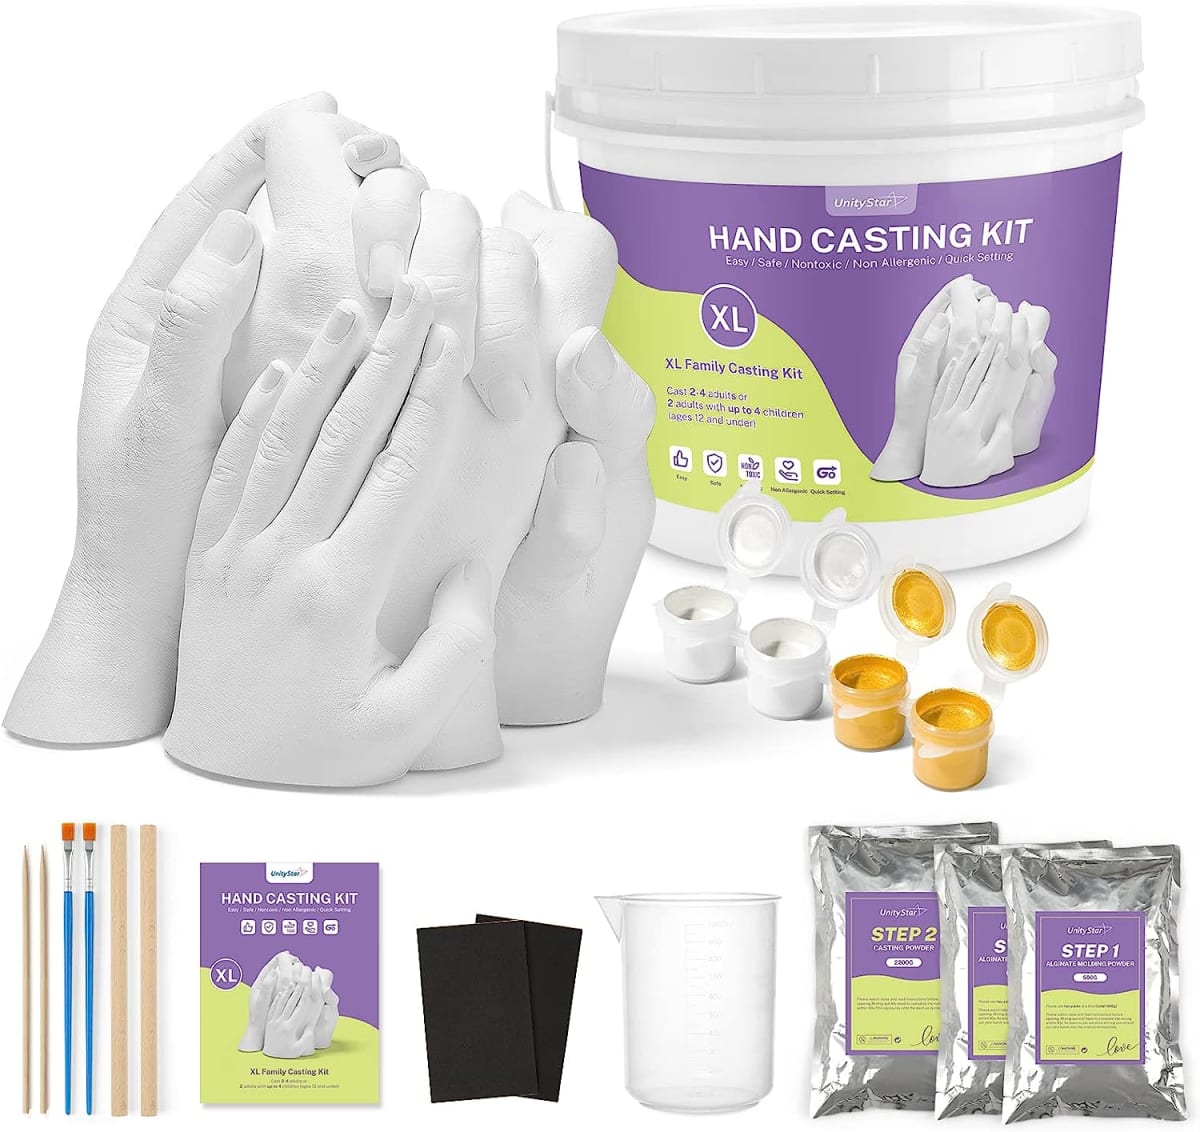 Hand Casting Kit for Family